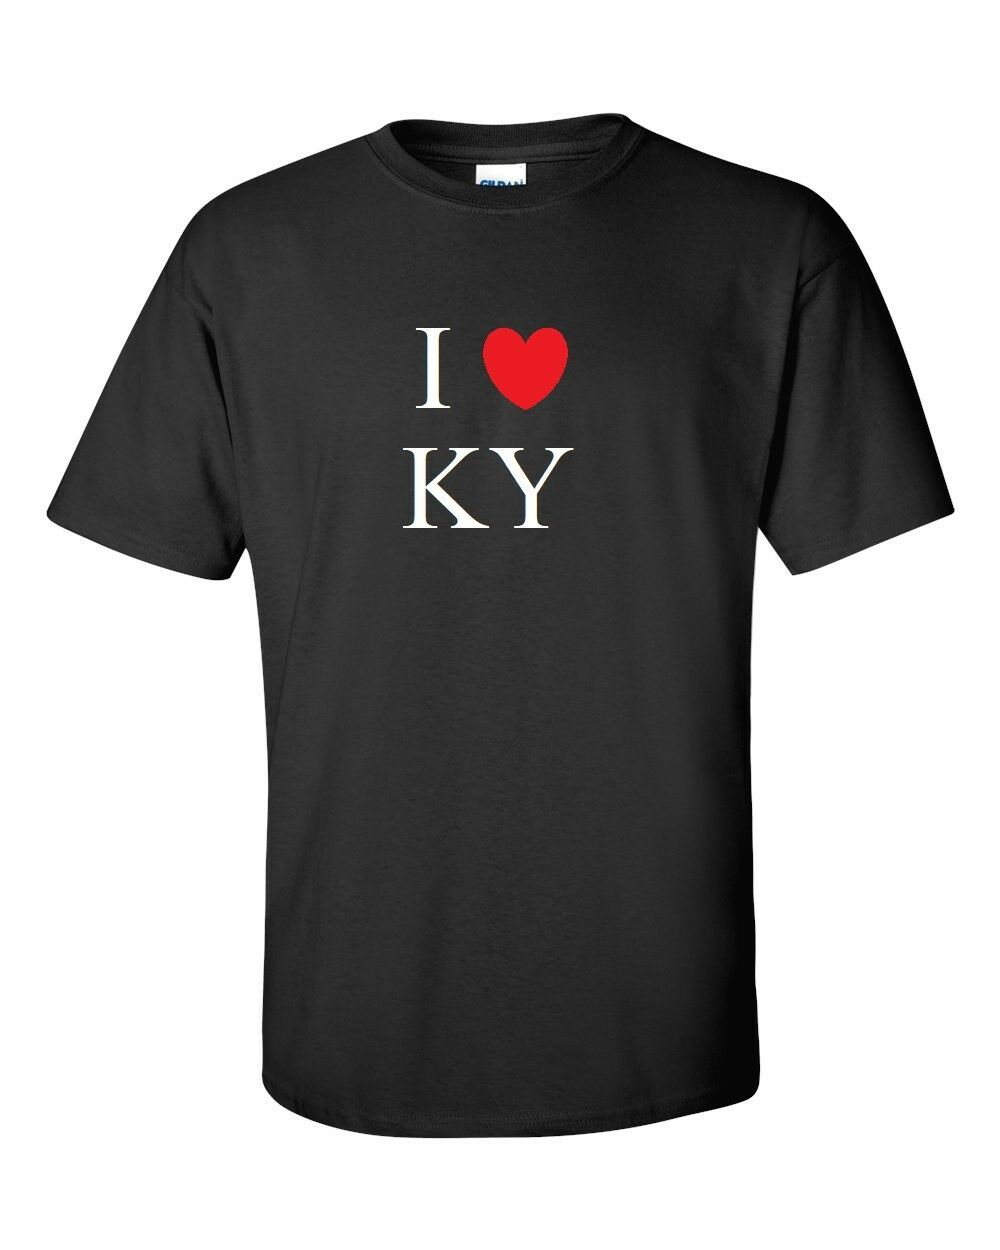 I Heart Love KY Shirt Kentucky the Bluegrass State Black White Red T-shirt S-5XL